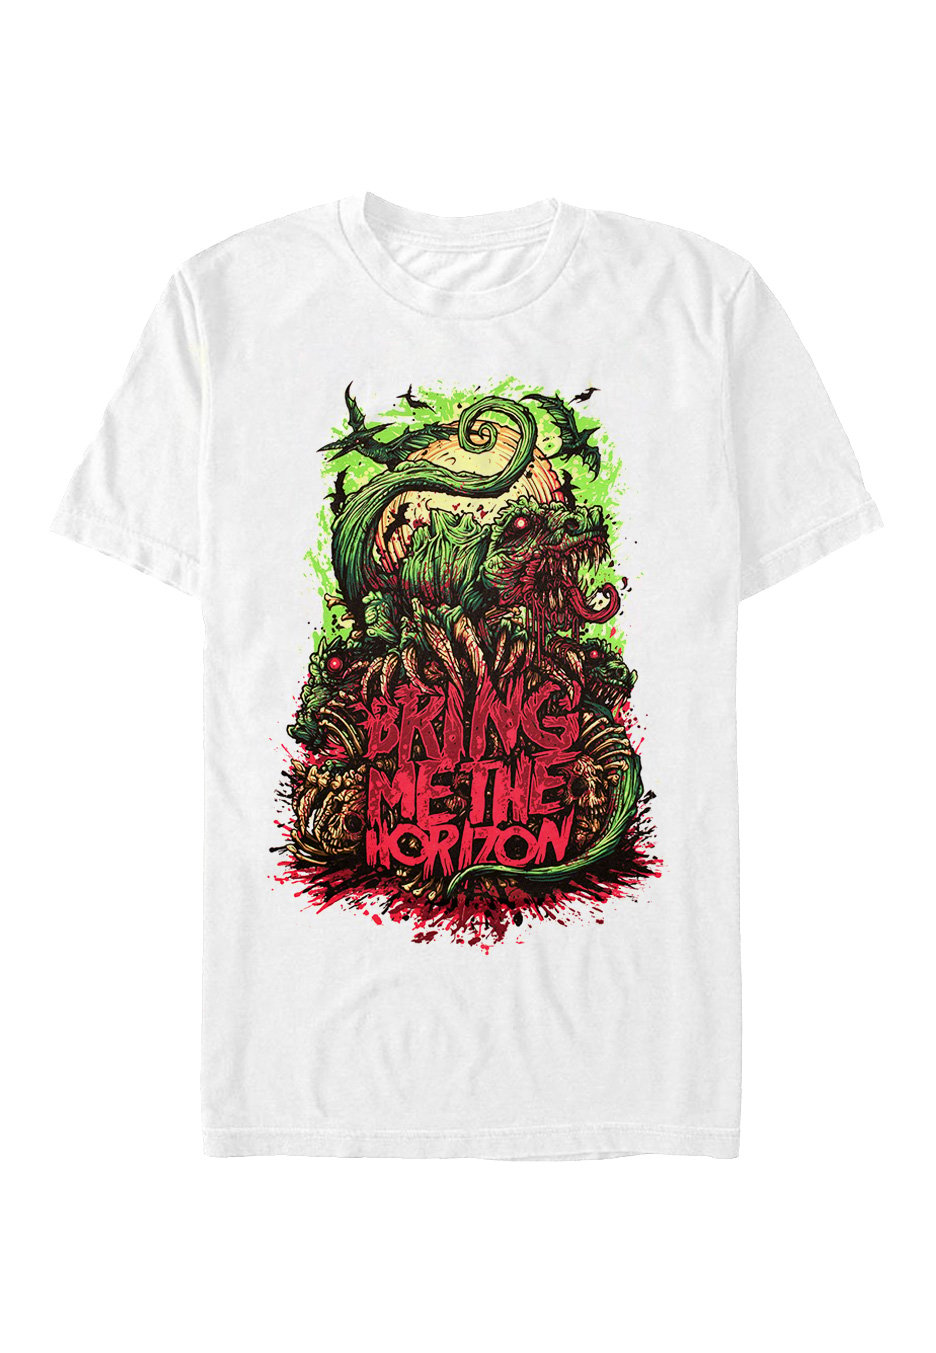 Bring Me The Horizon - Dinosaur White - T-Shirt